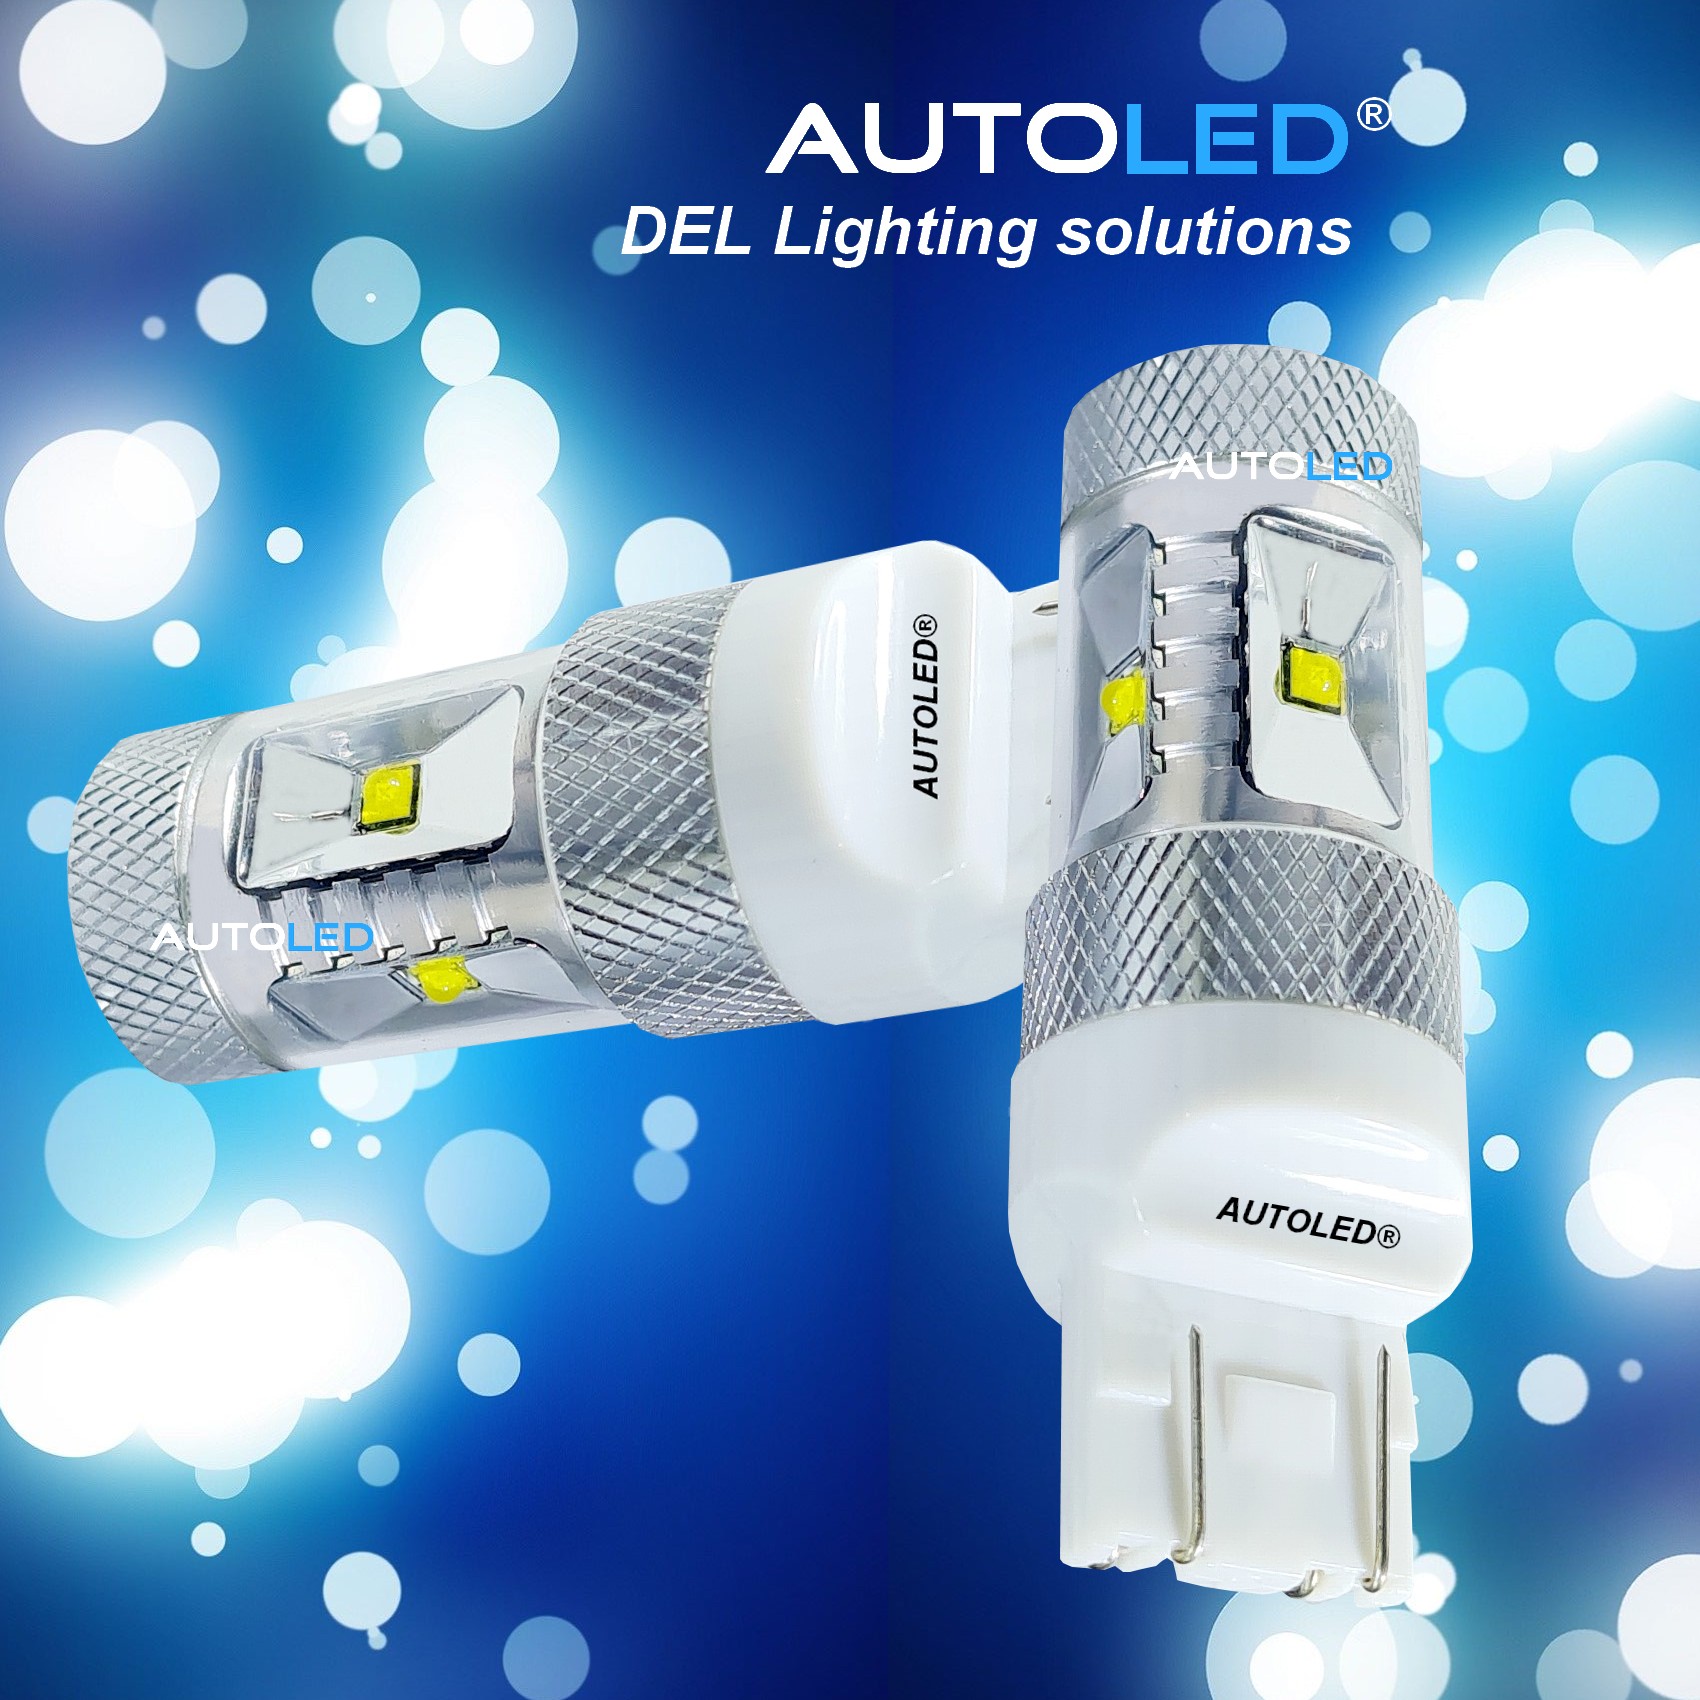 Ampoules LED Feux de Jour T20 W21/5W Extra lumineuse - Xenon Discount